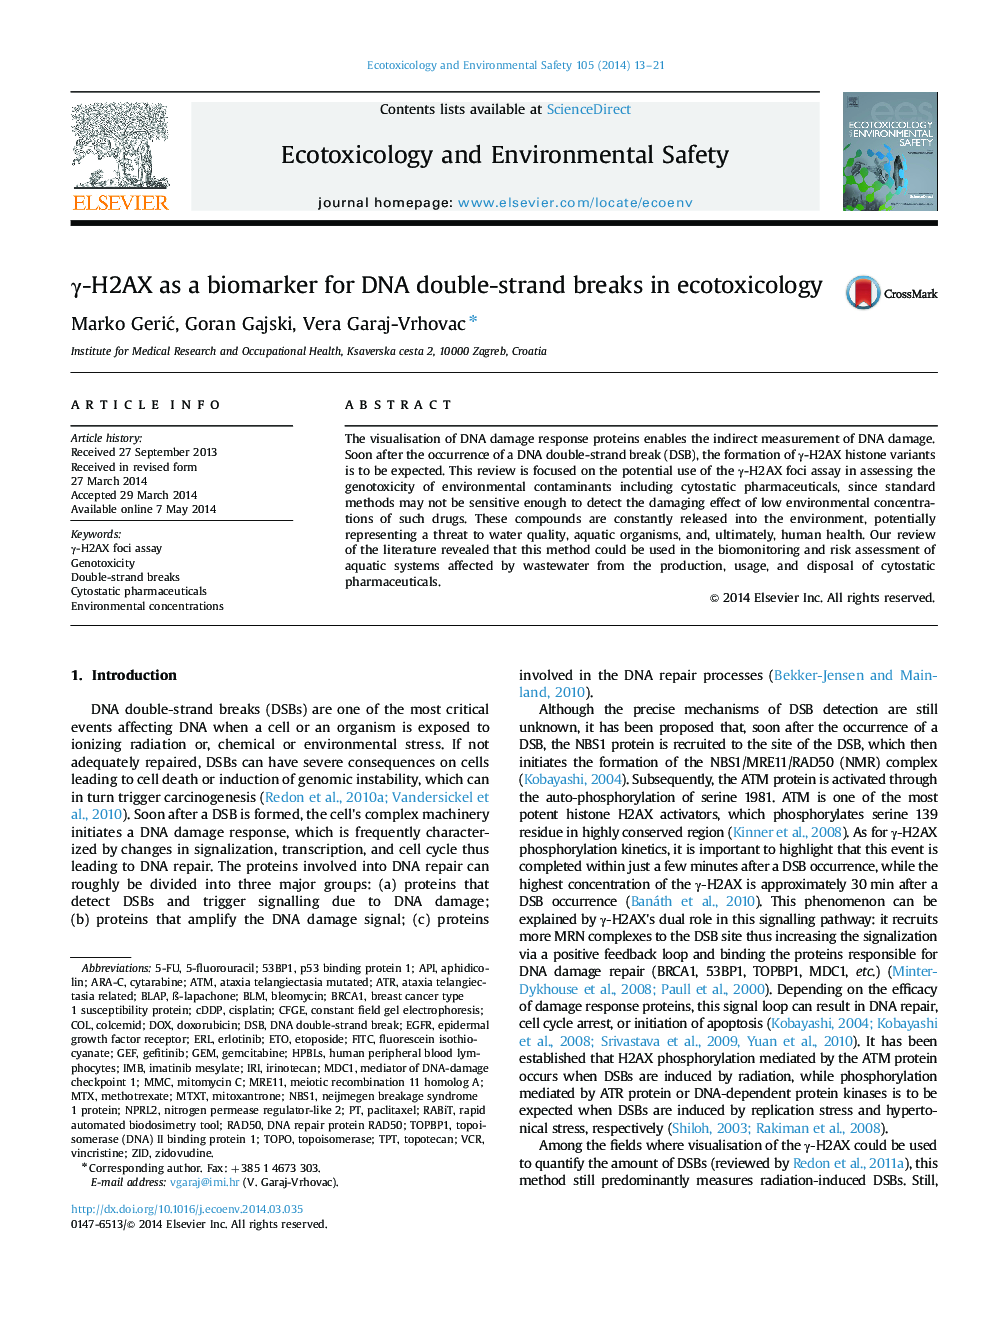 γ-H2AX as a biomarker for DNA double-strand breaks in ecotoxicology